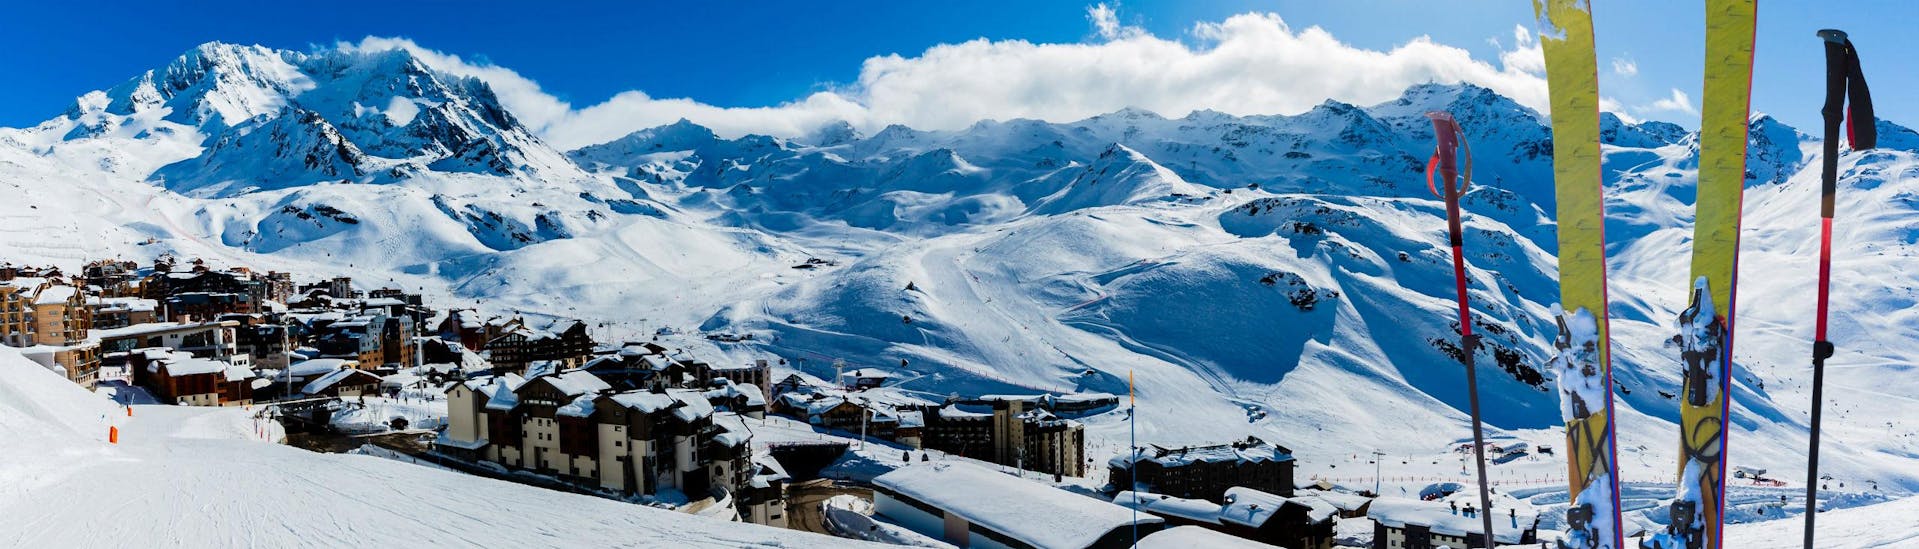 Tijdens een skiles met een skischool in Les 3 Vallées heb je een prachtig uitzicht op zonnige bergen.